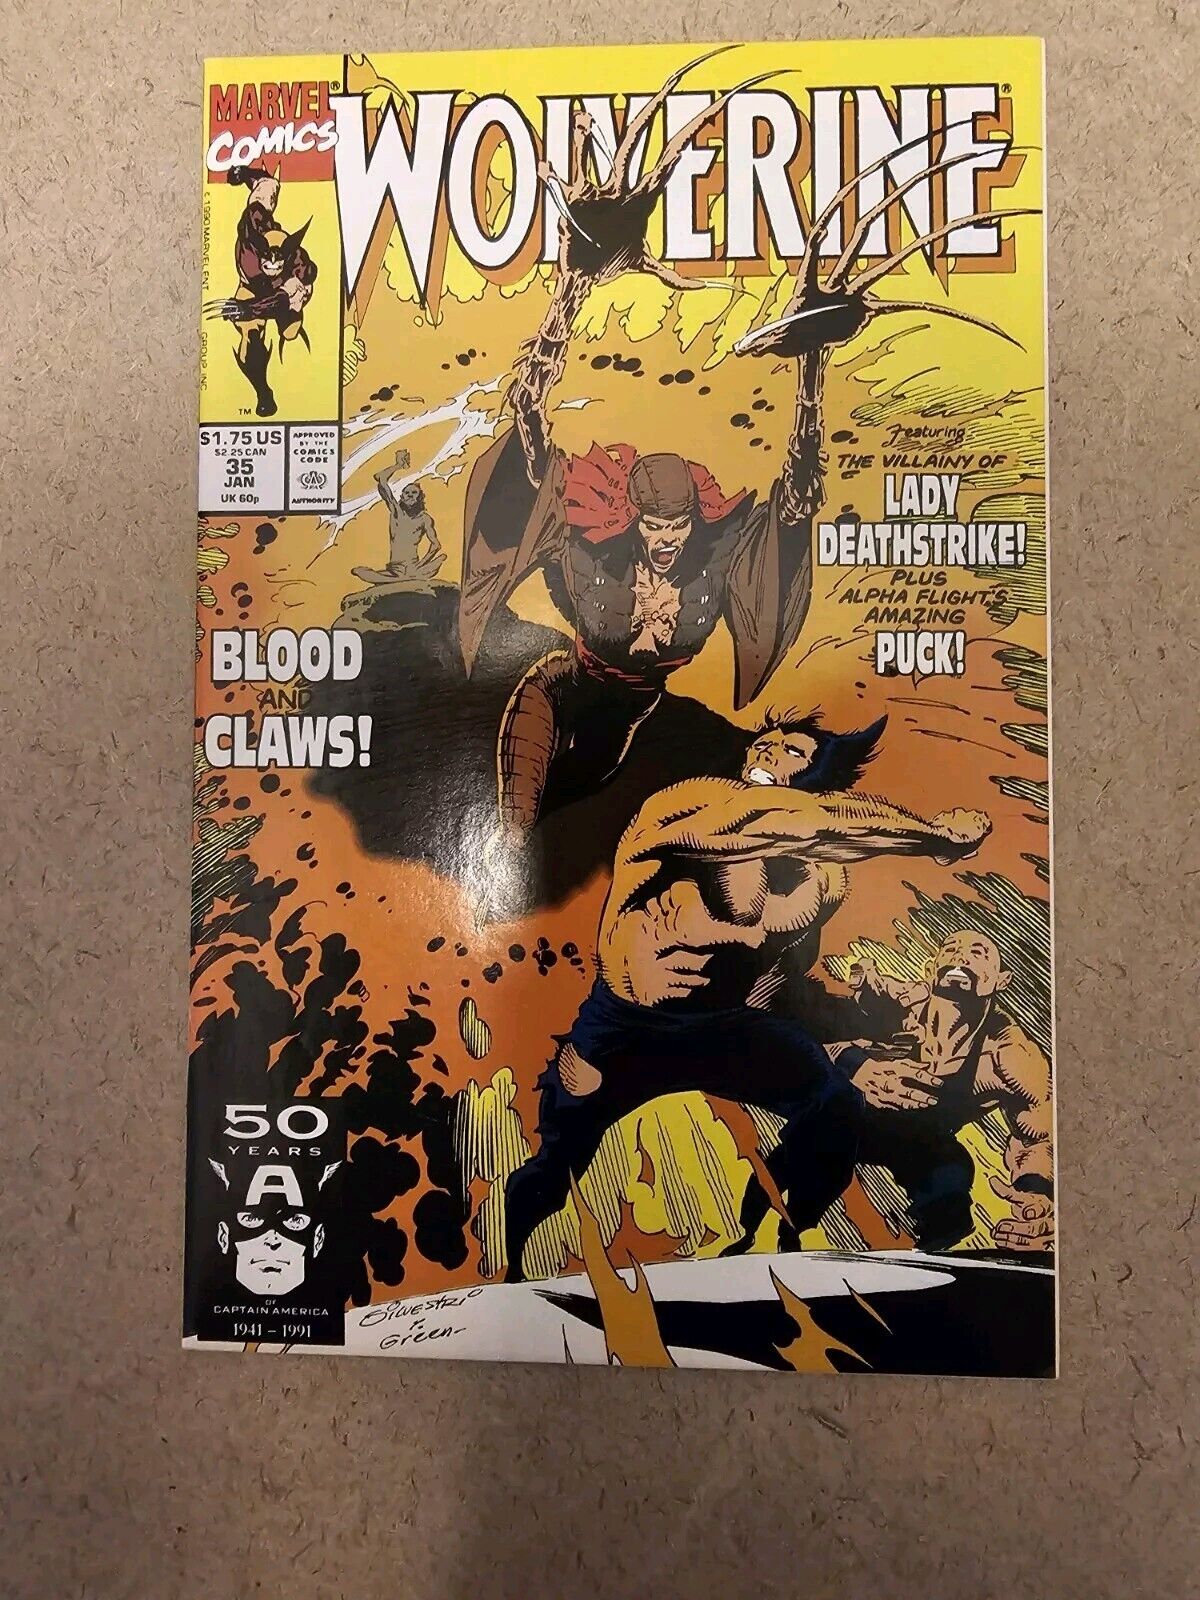 Wolverine #35 (Marvel Comics January 1991)